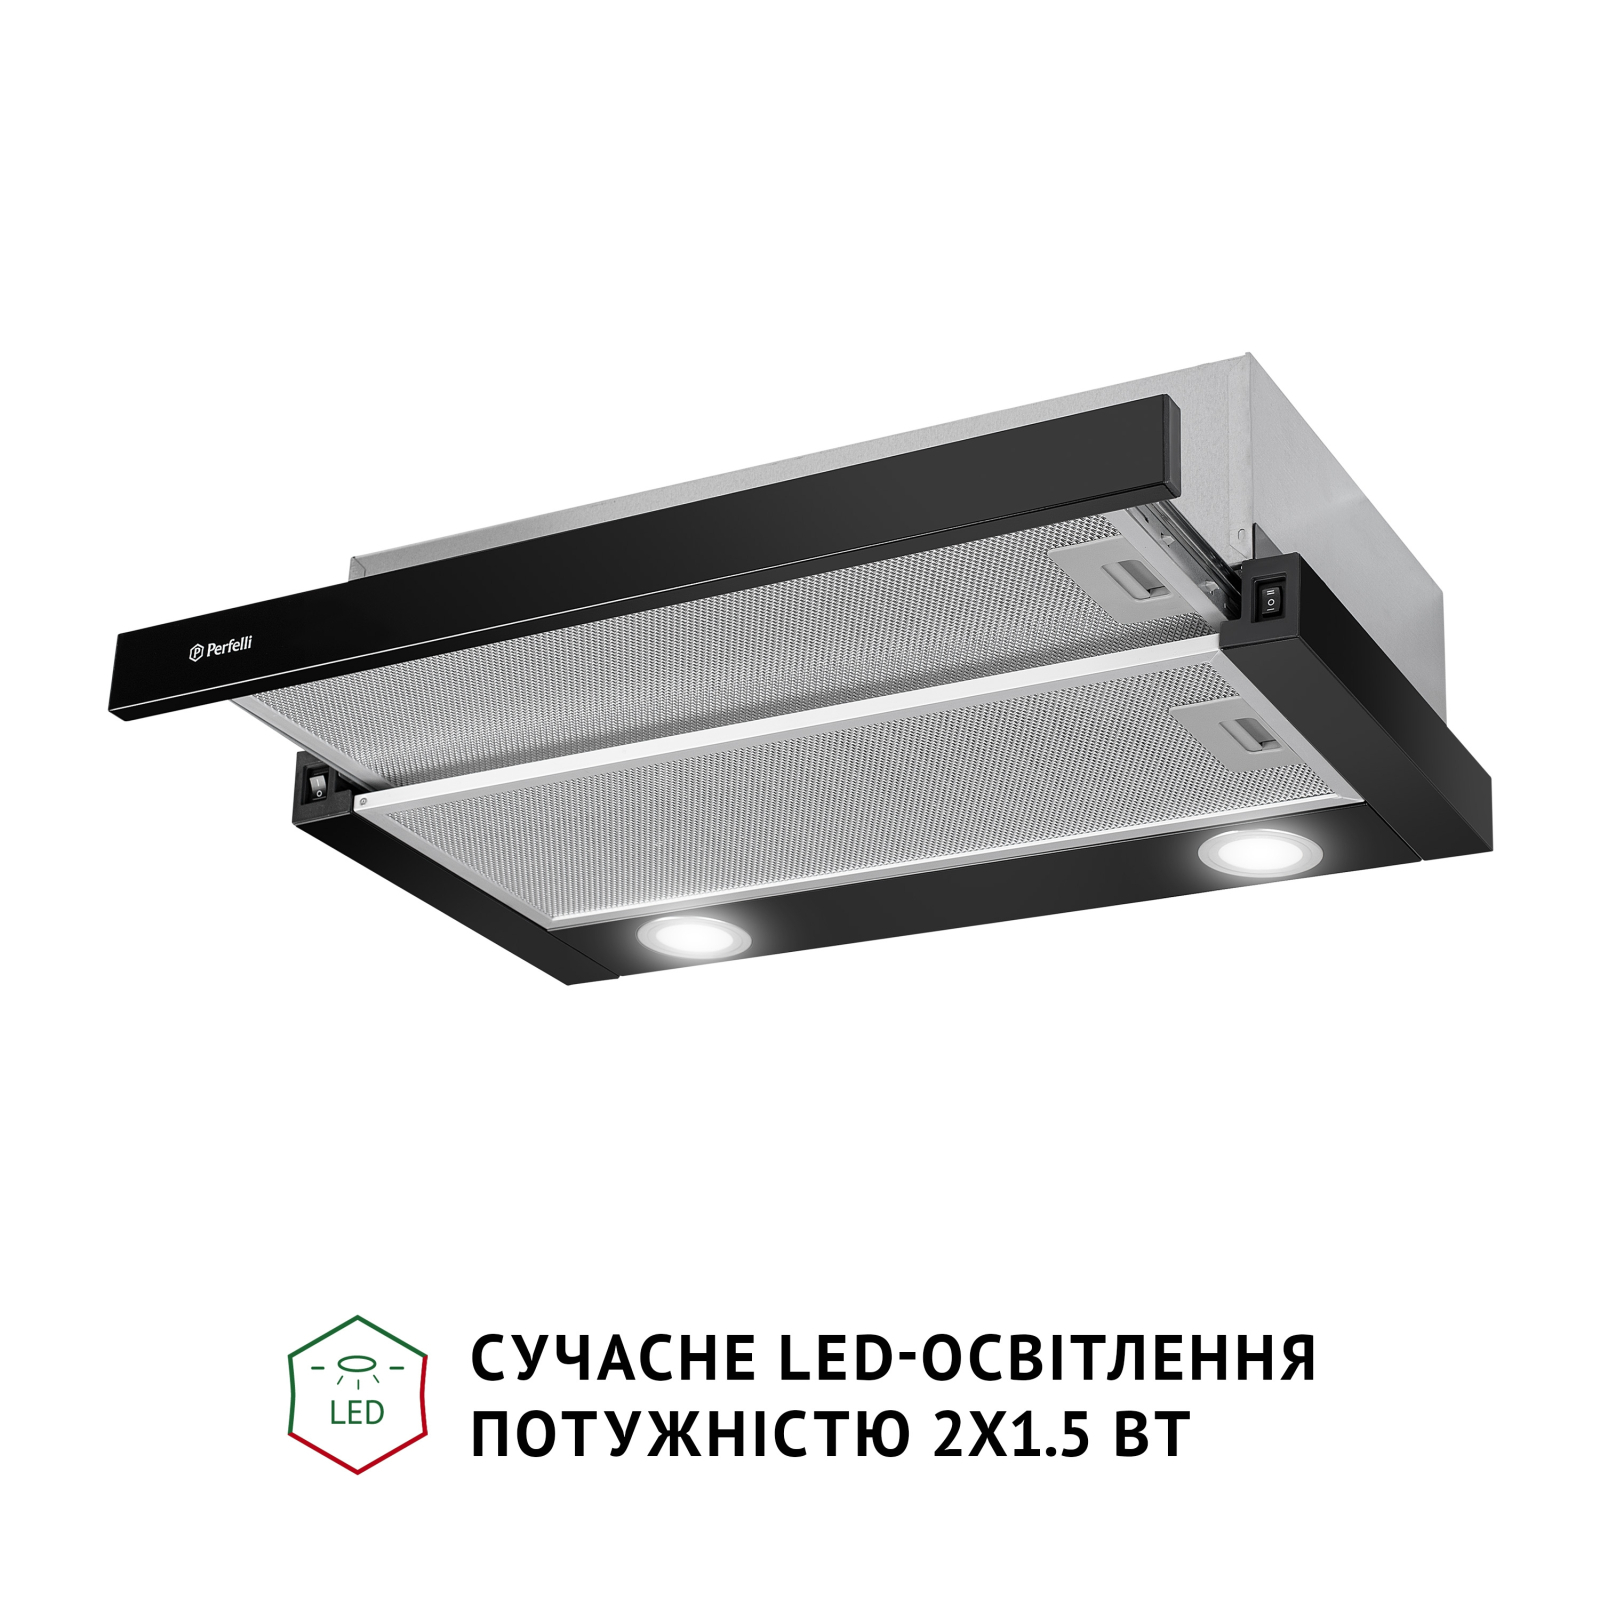 Вытяжка кухонная Perfelli TL 602 WH LED изображение 4